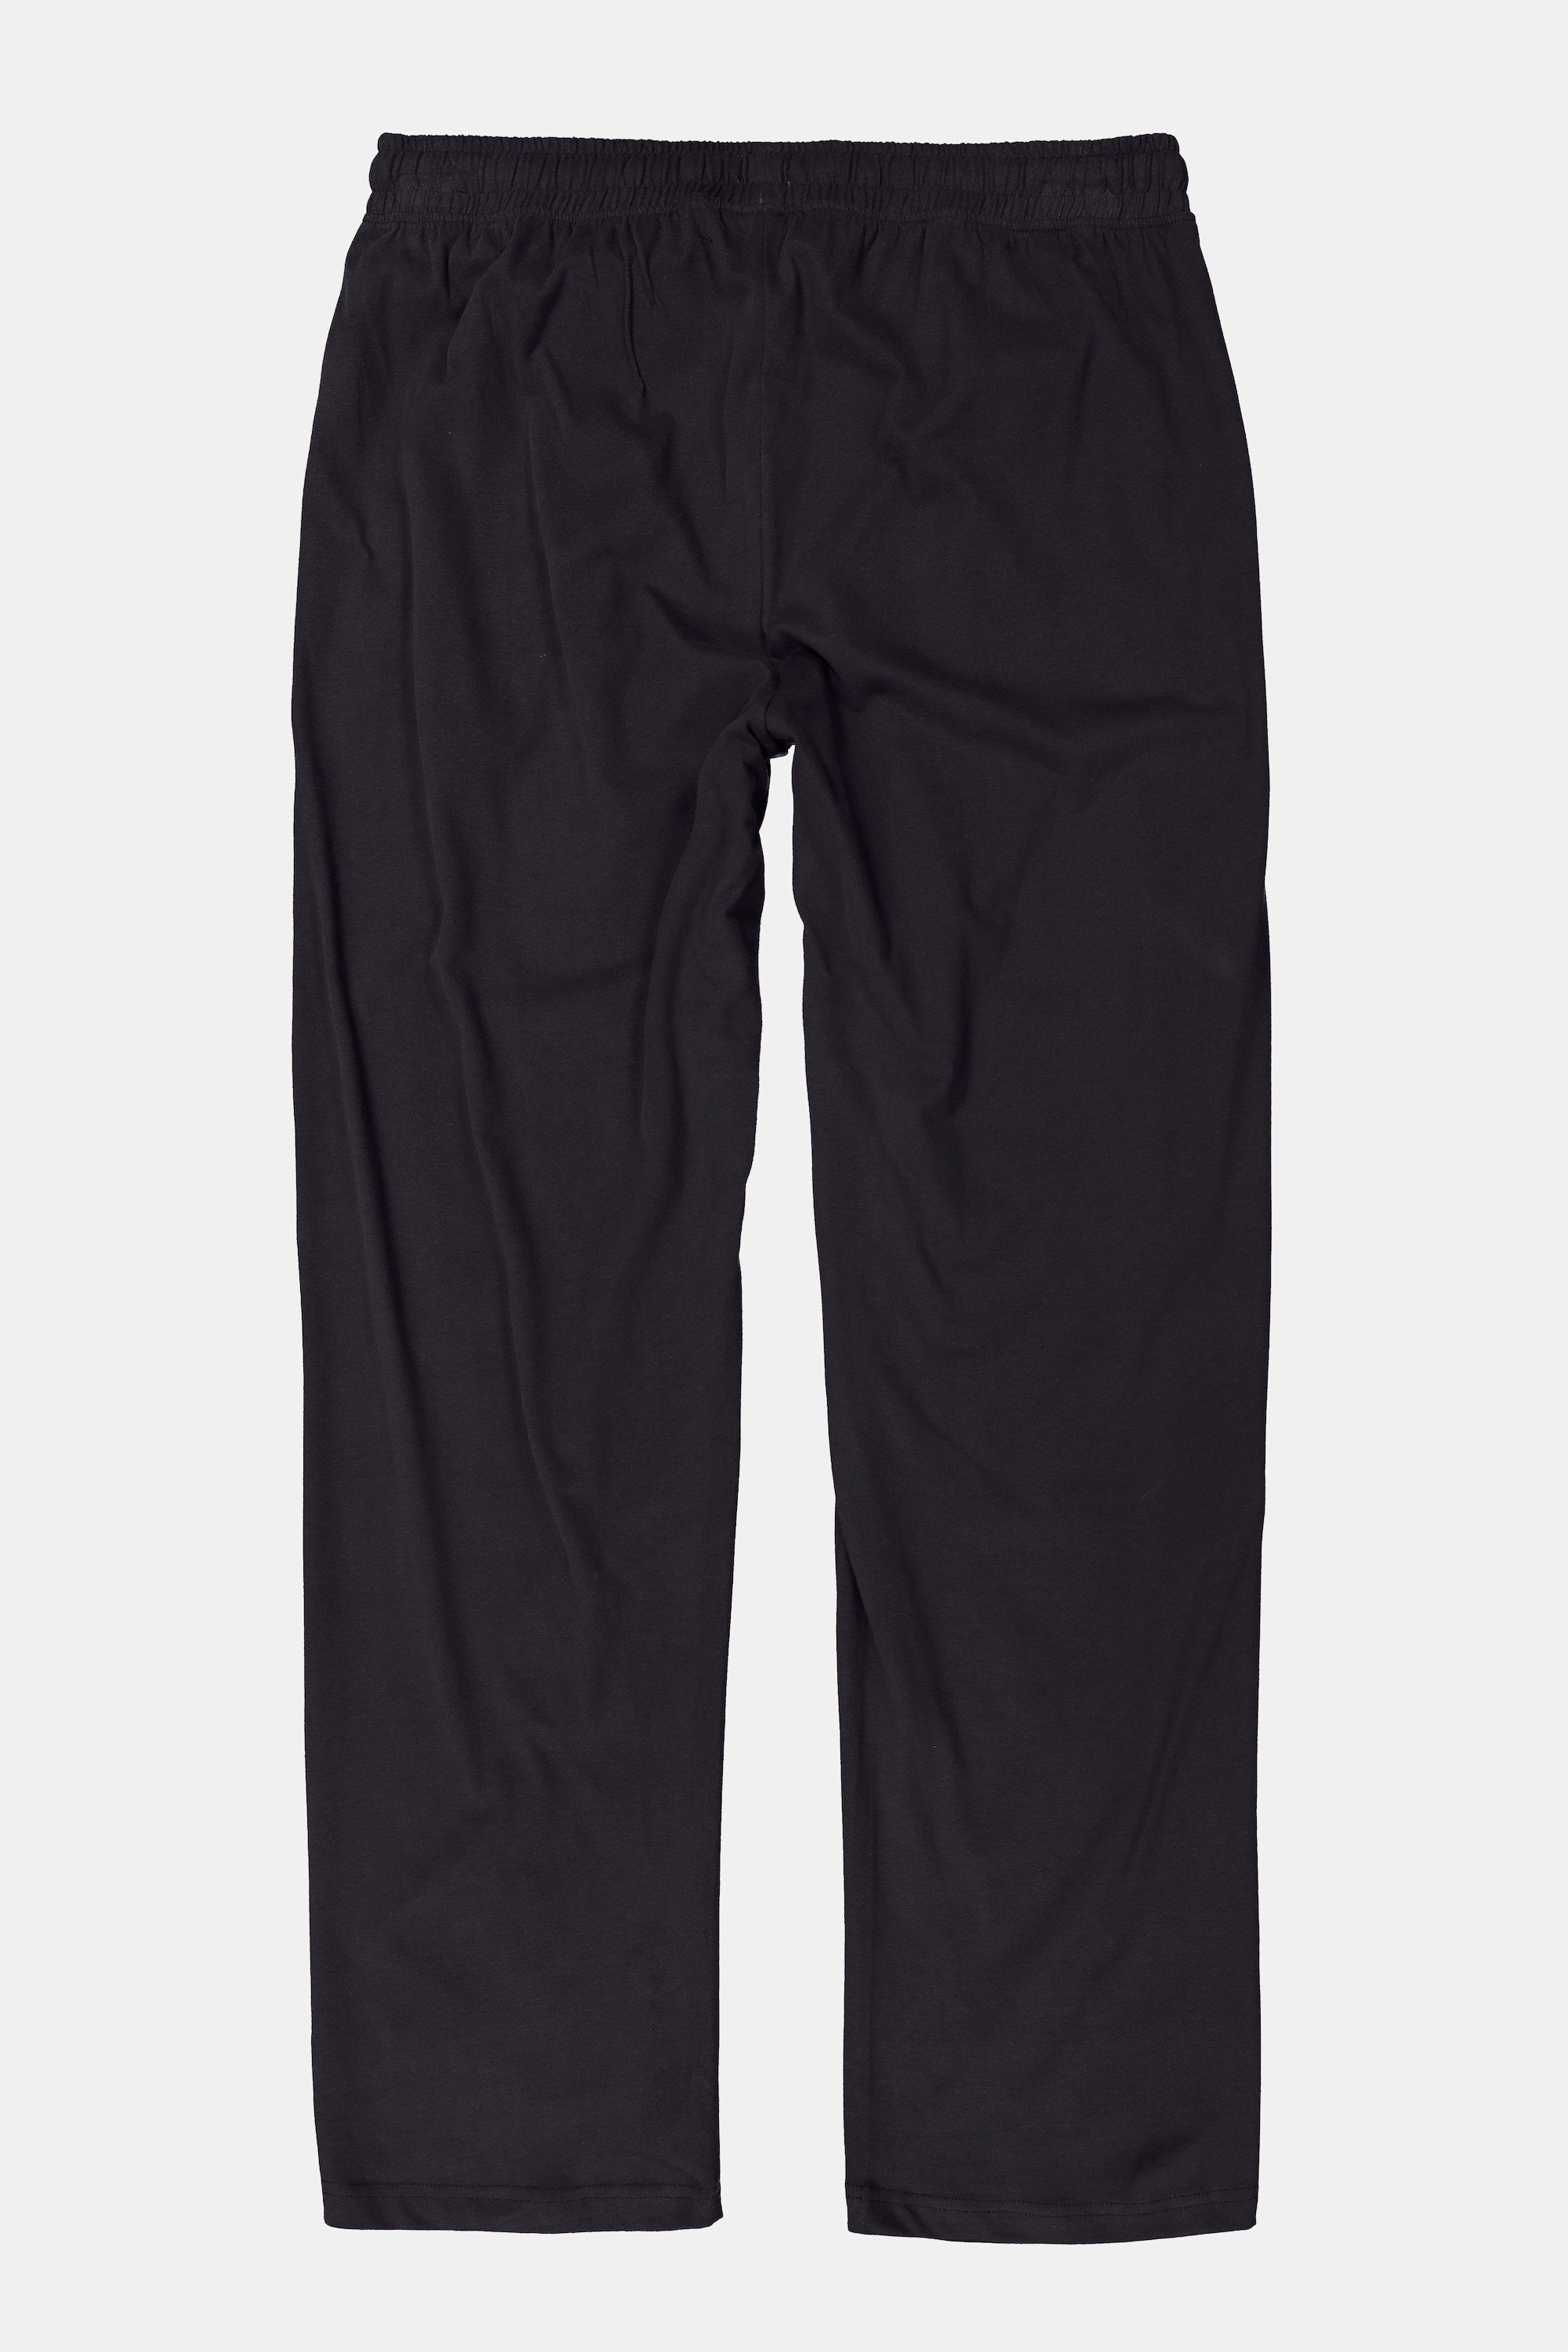 JP1880 Elastikbund Form lange Schlafanzug Schlafanzug-Hose Homewear schwarz